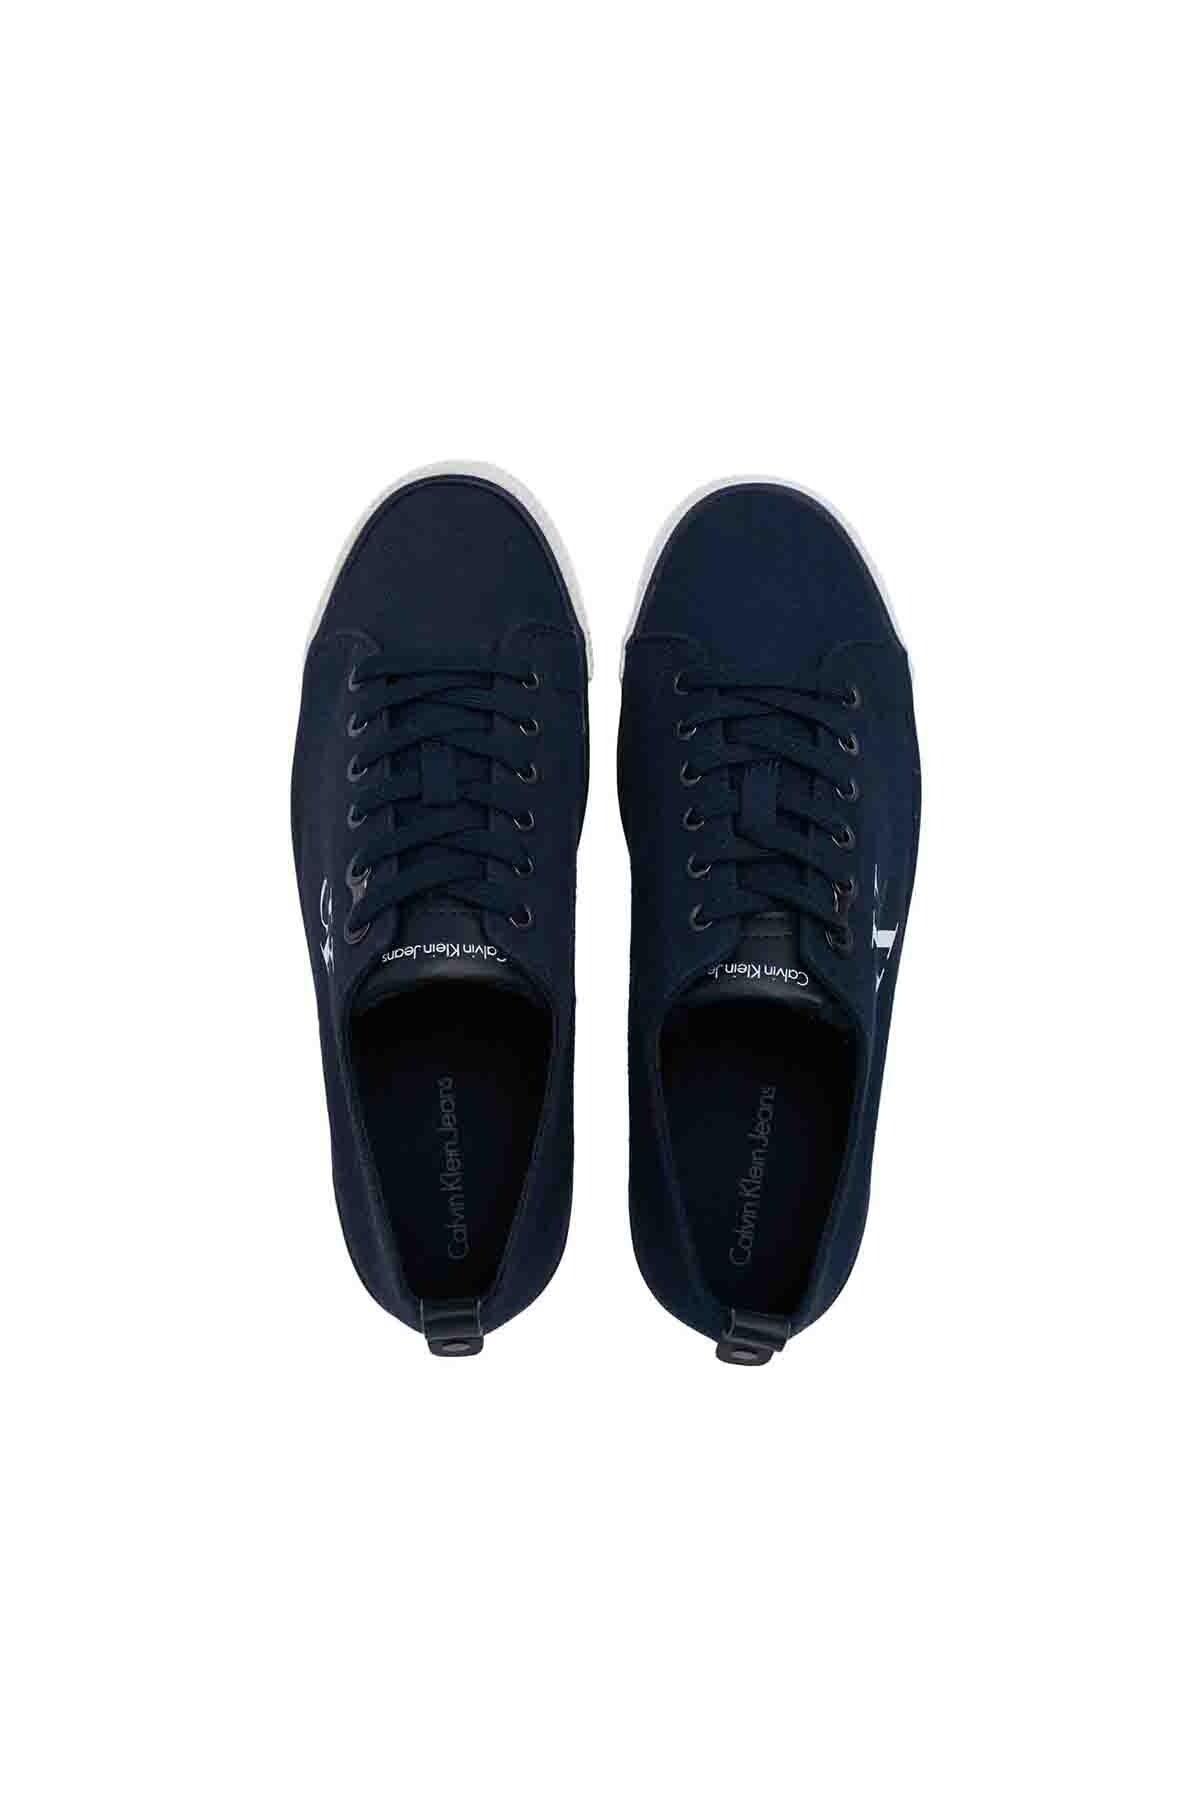 Calvin Klein Marka Logolu Erkek Ayakkabı 00000S0369 NVY LACİVERT